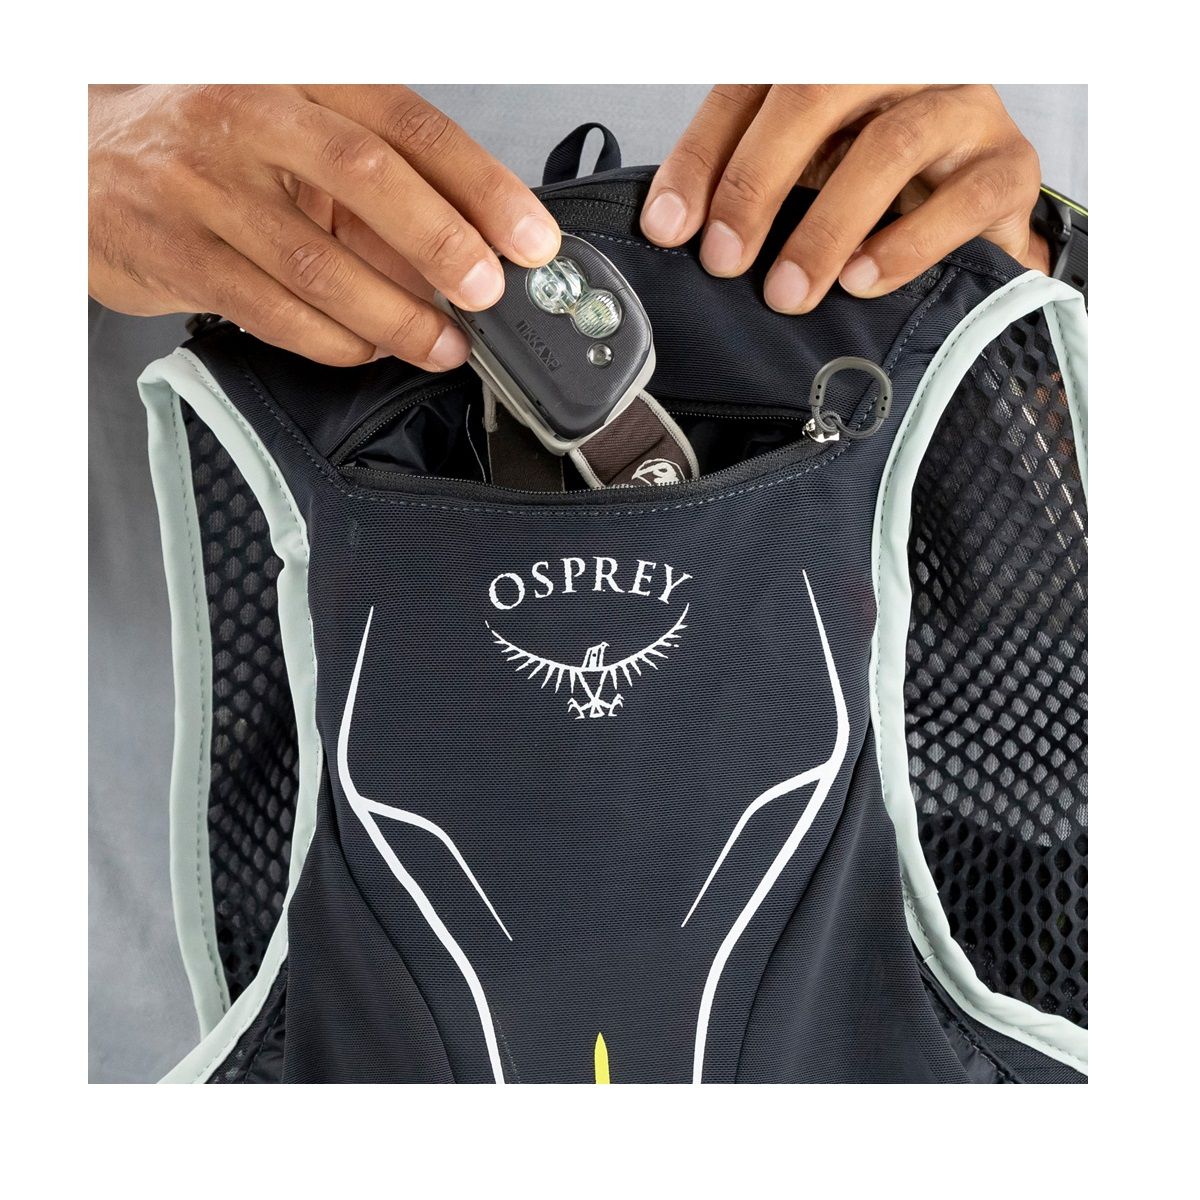 Osprey Duro 1.5 con dos Botellas Flexibles 250cc